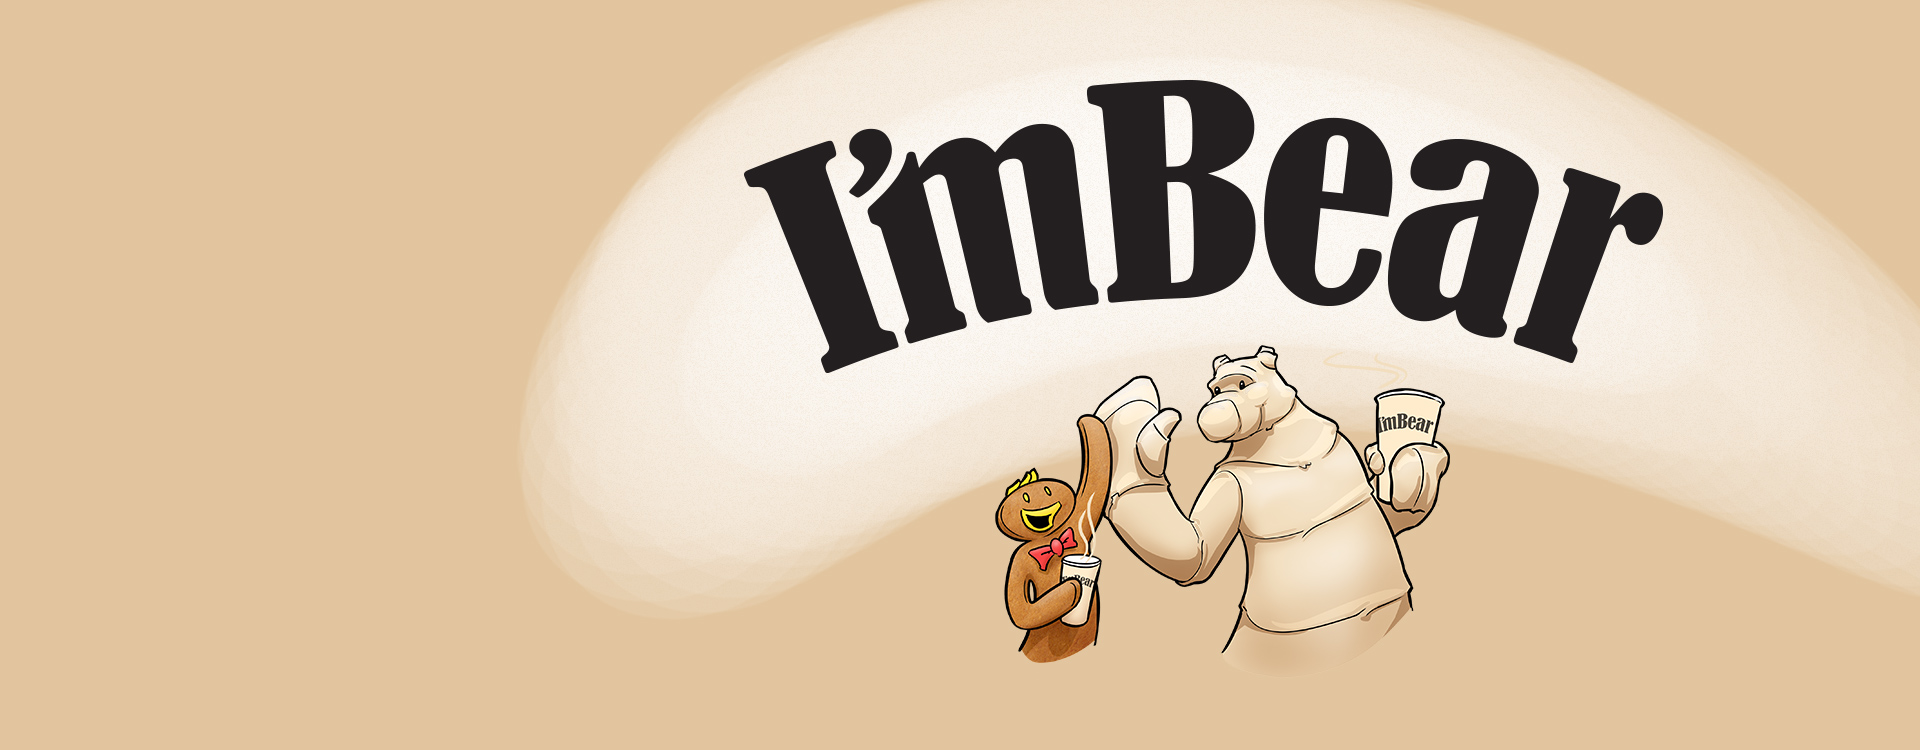 Брендинг имбирных продуктов I’mBear        